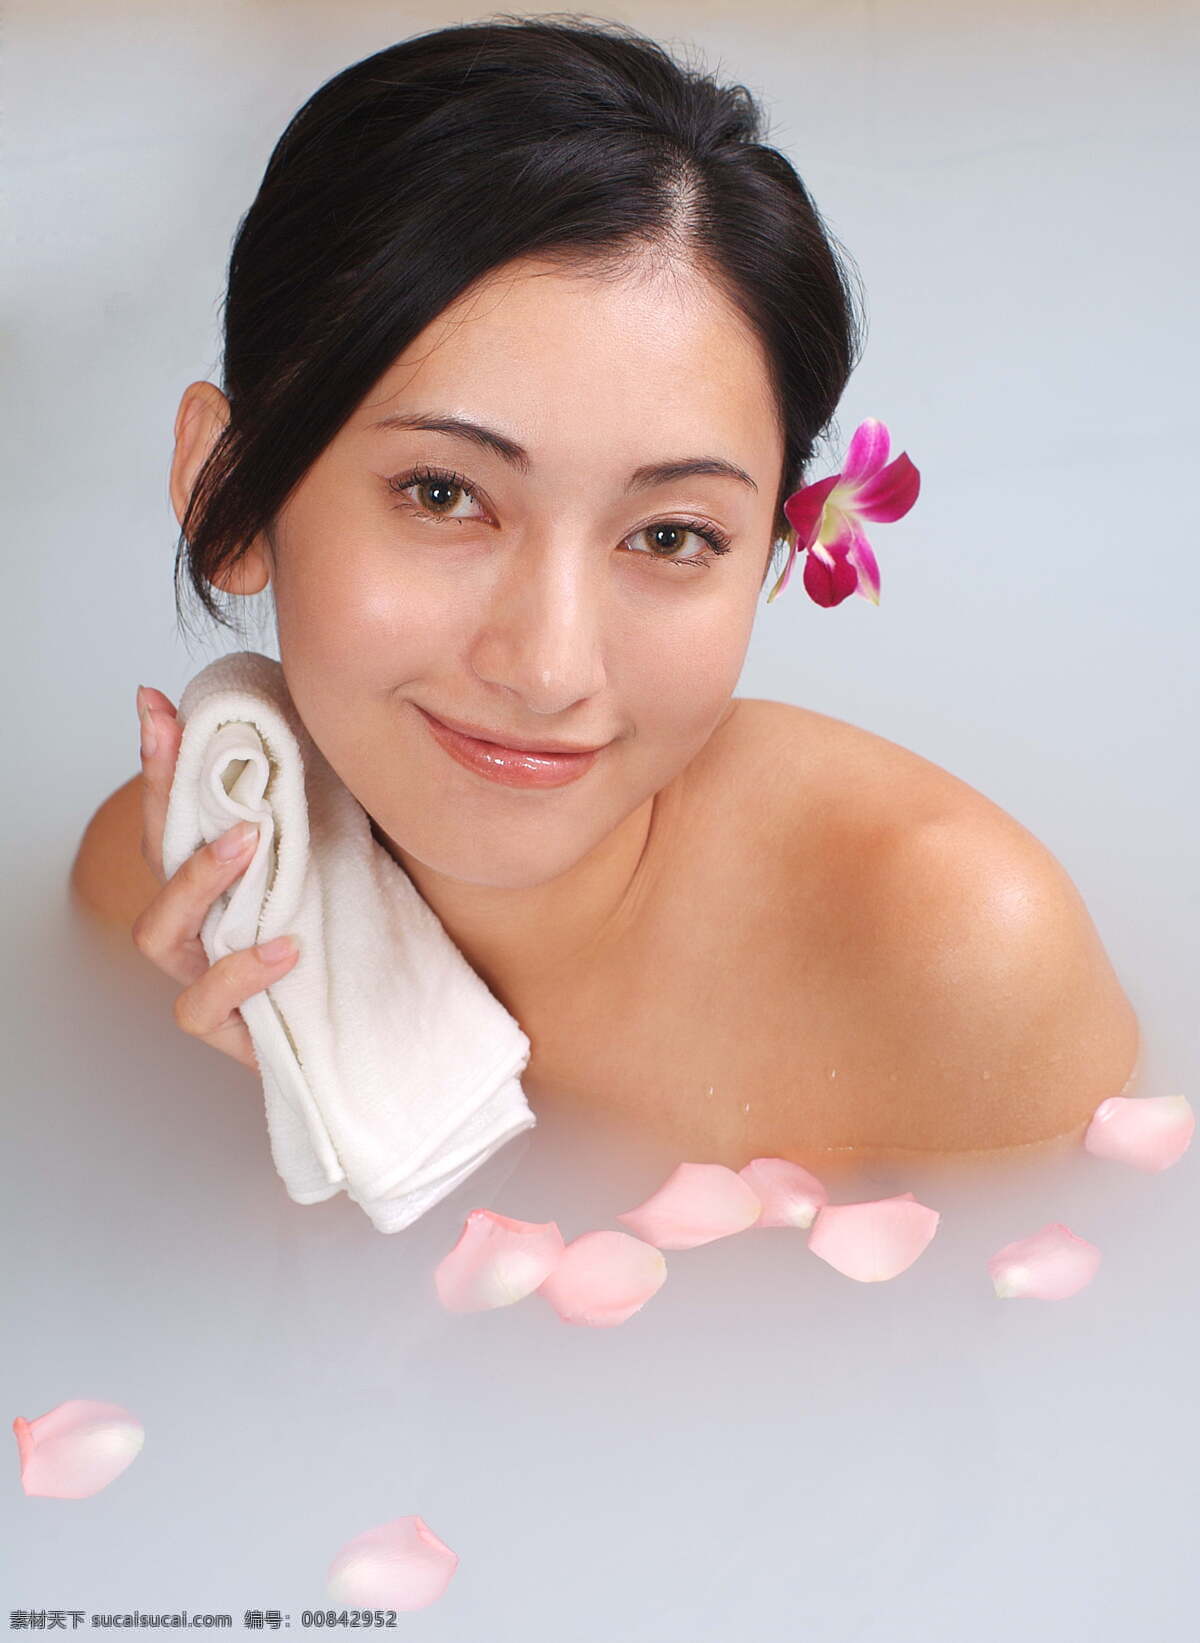 甜美 女孩 牛奶浴 泡澡 水疗 美容 养生 护肤 spa 女性 女人 美体 美女图片 人物图片